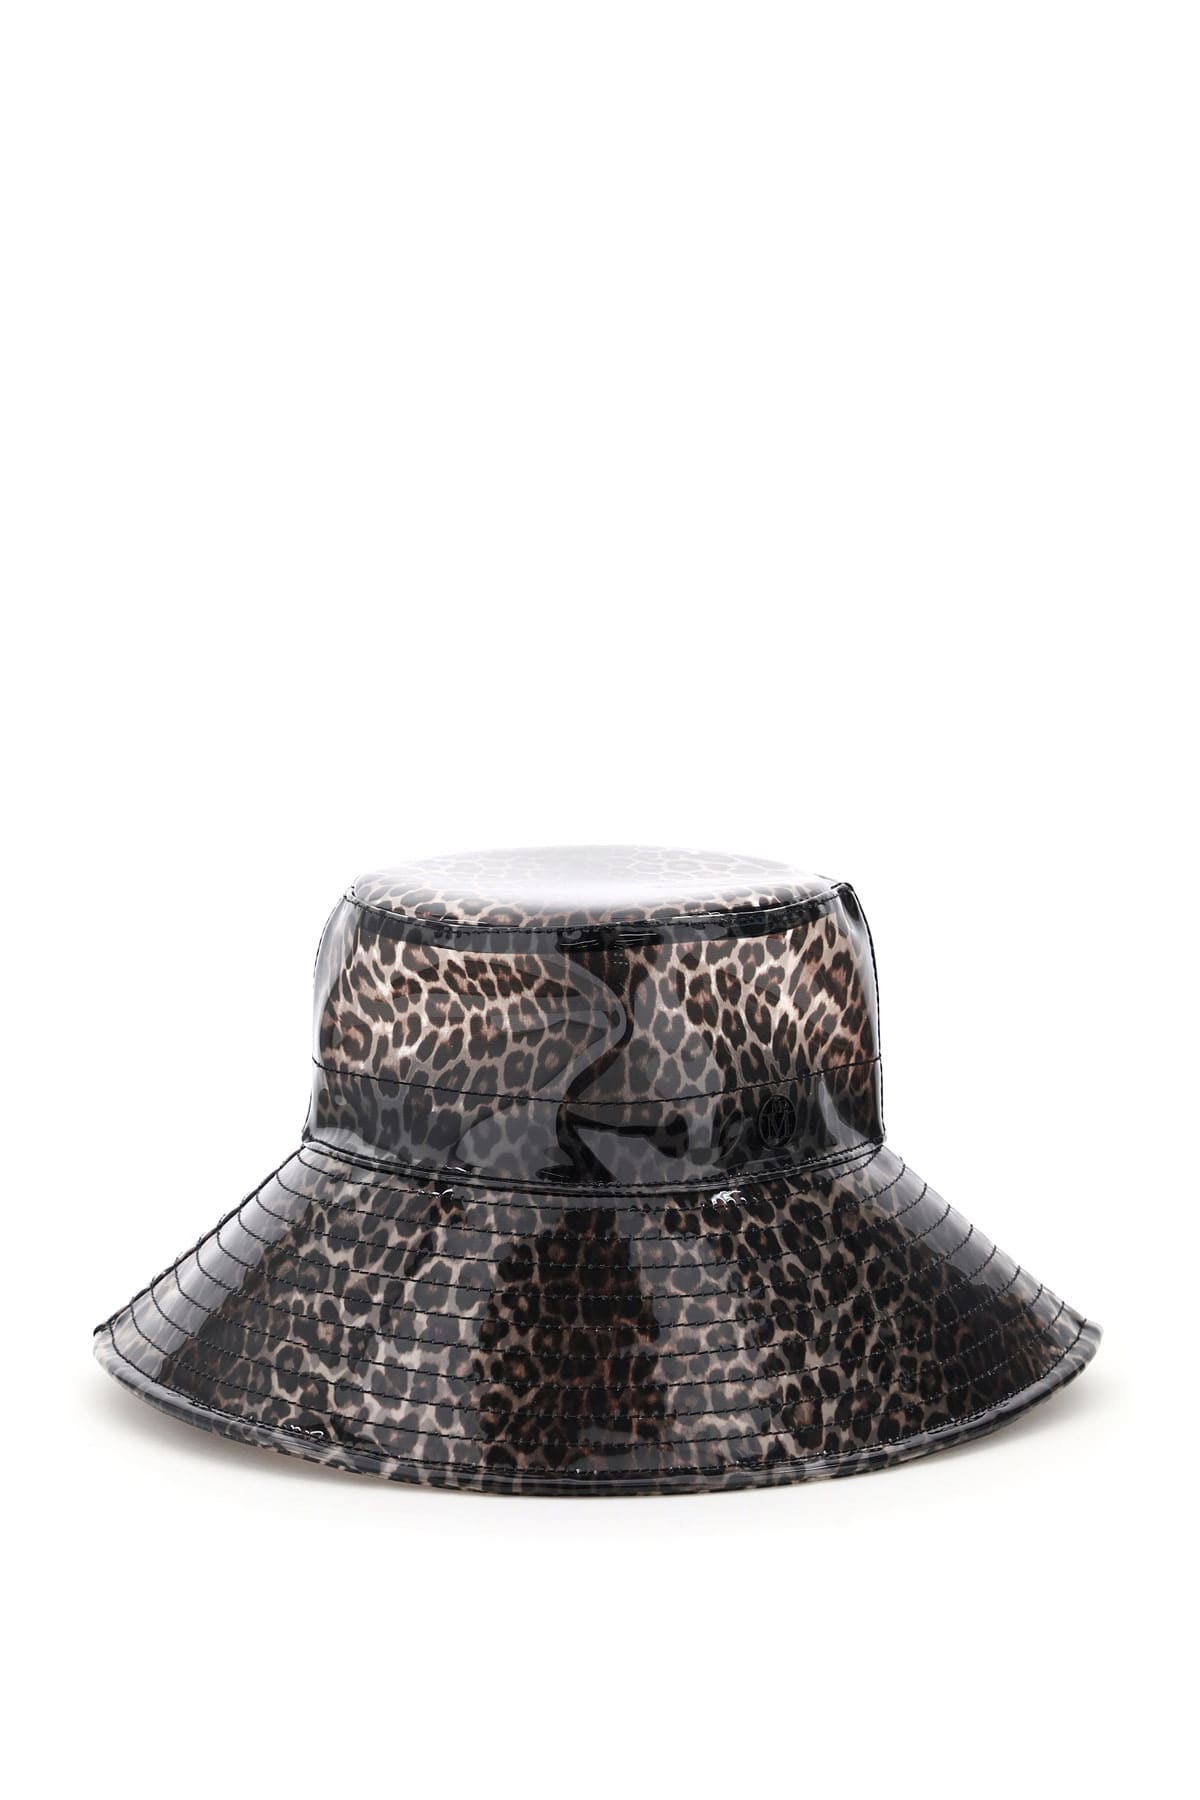 Maison Michel Charlotte Leopard Pvc Bucket Hat